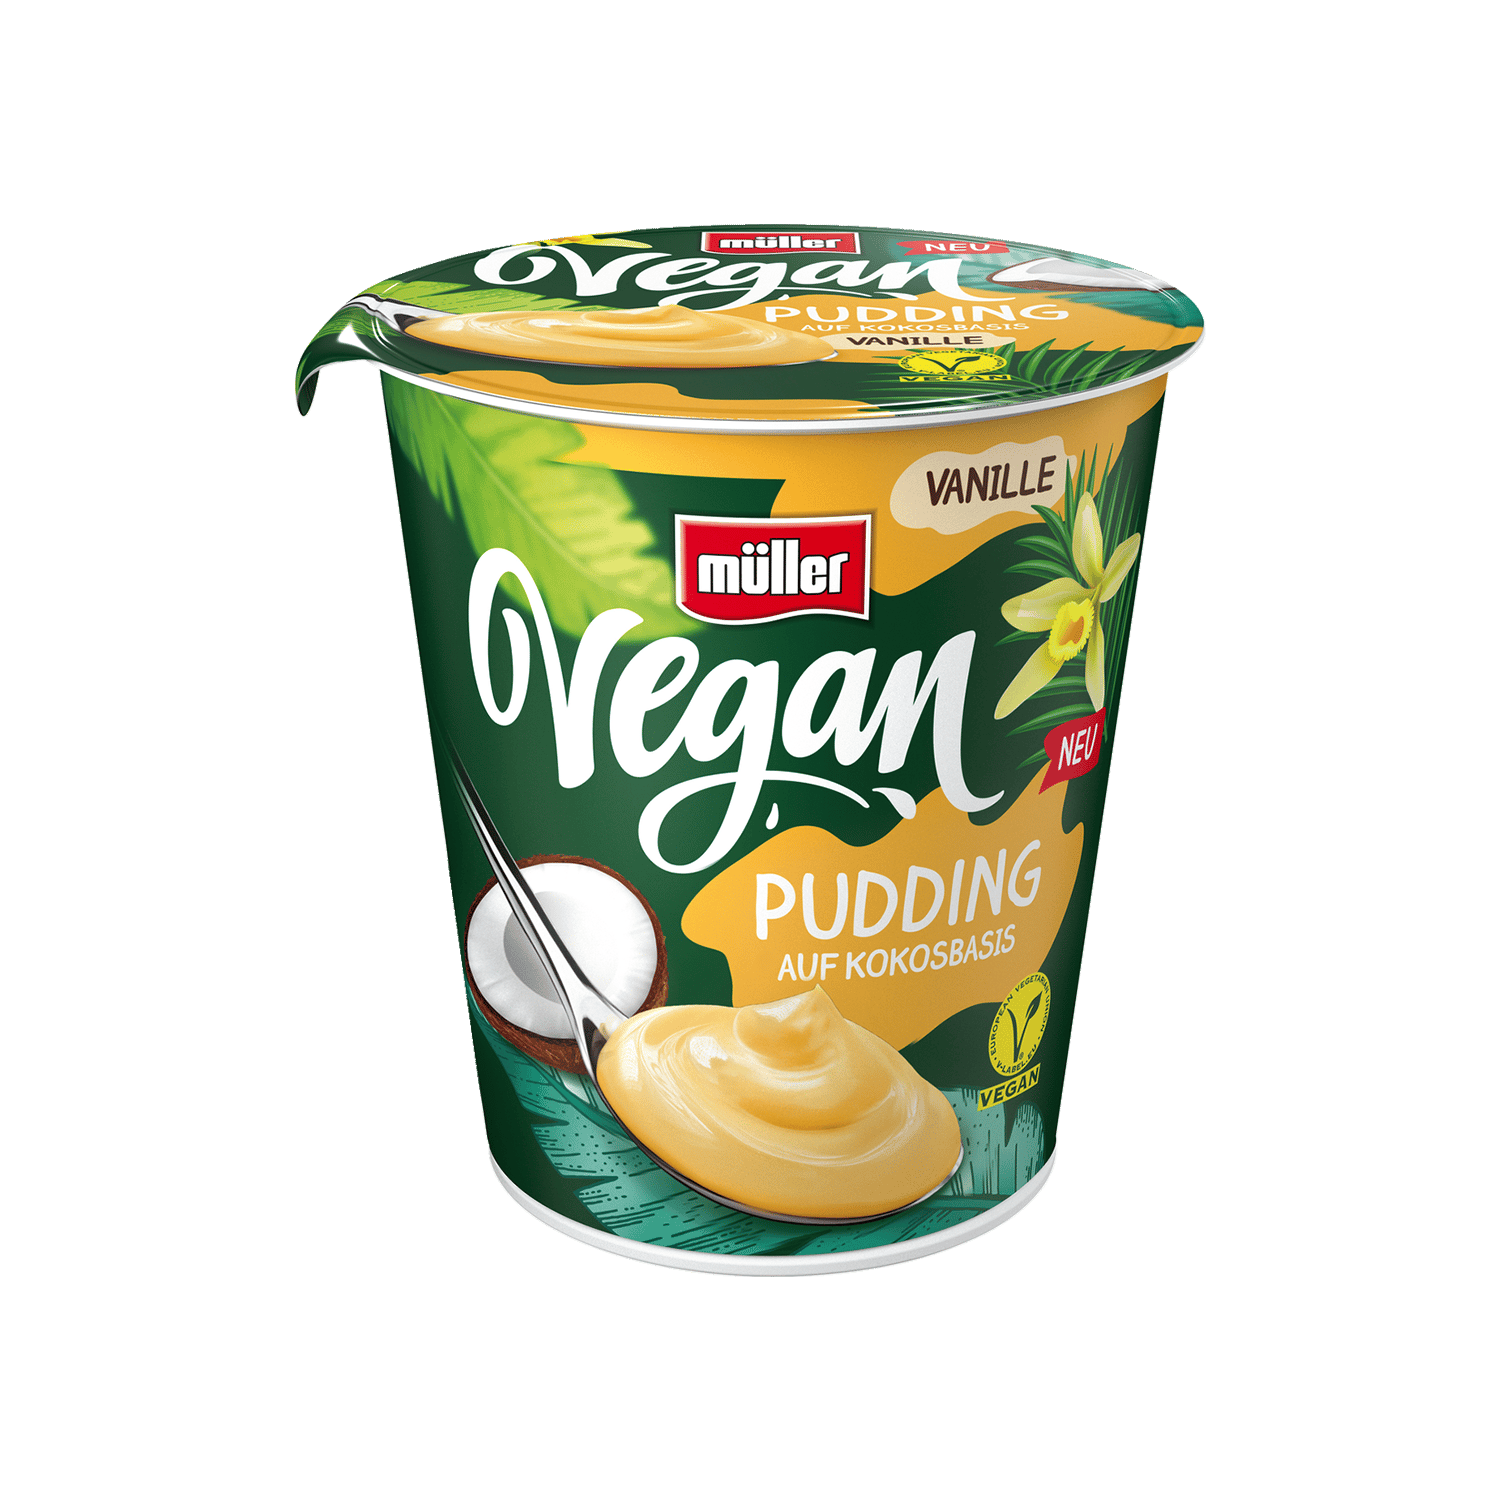 Vegan Pudding Vanilla, 300g